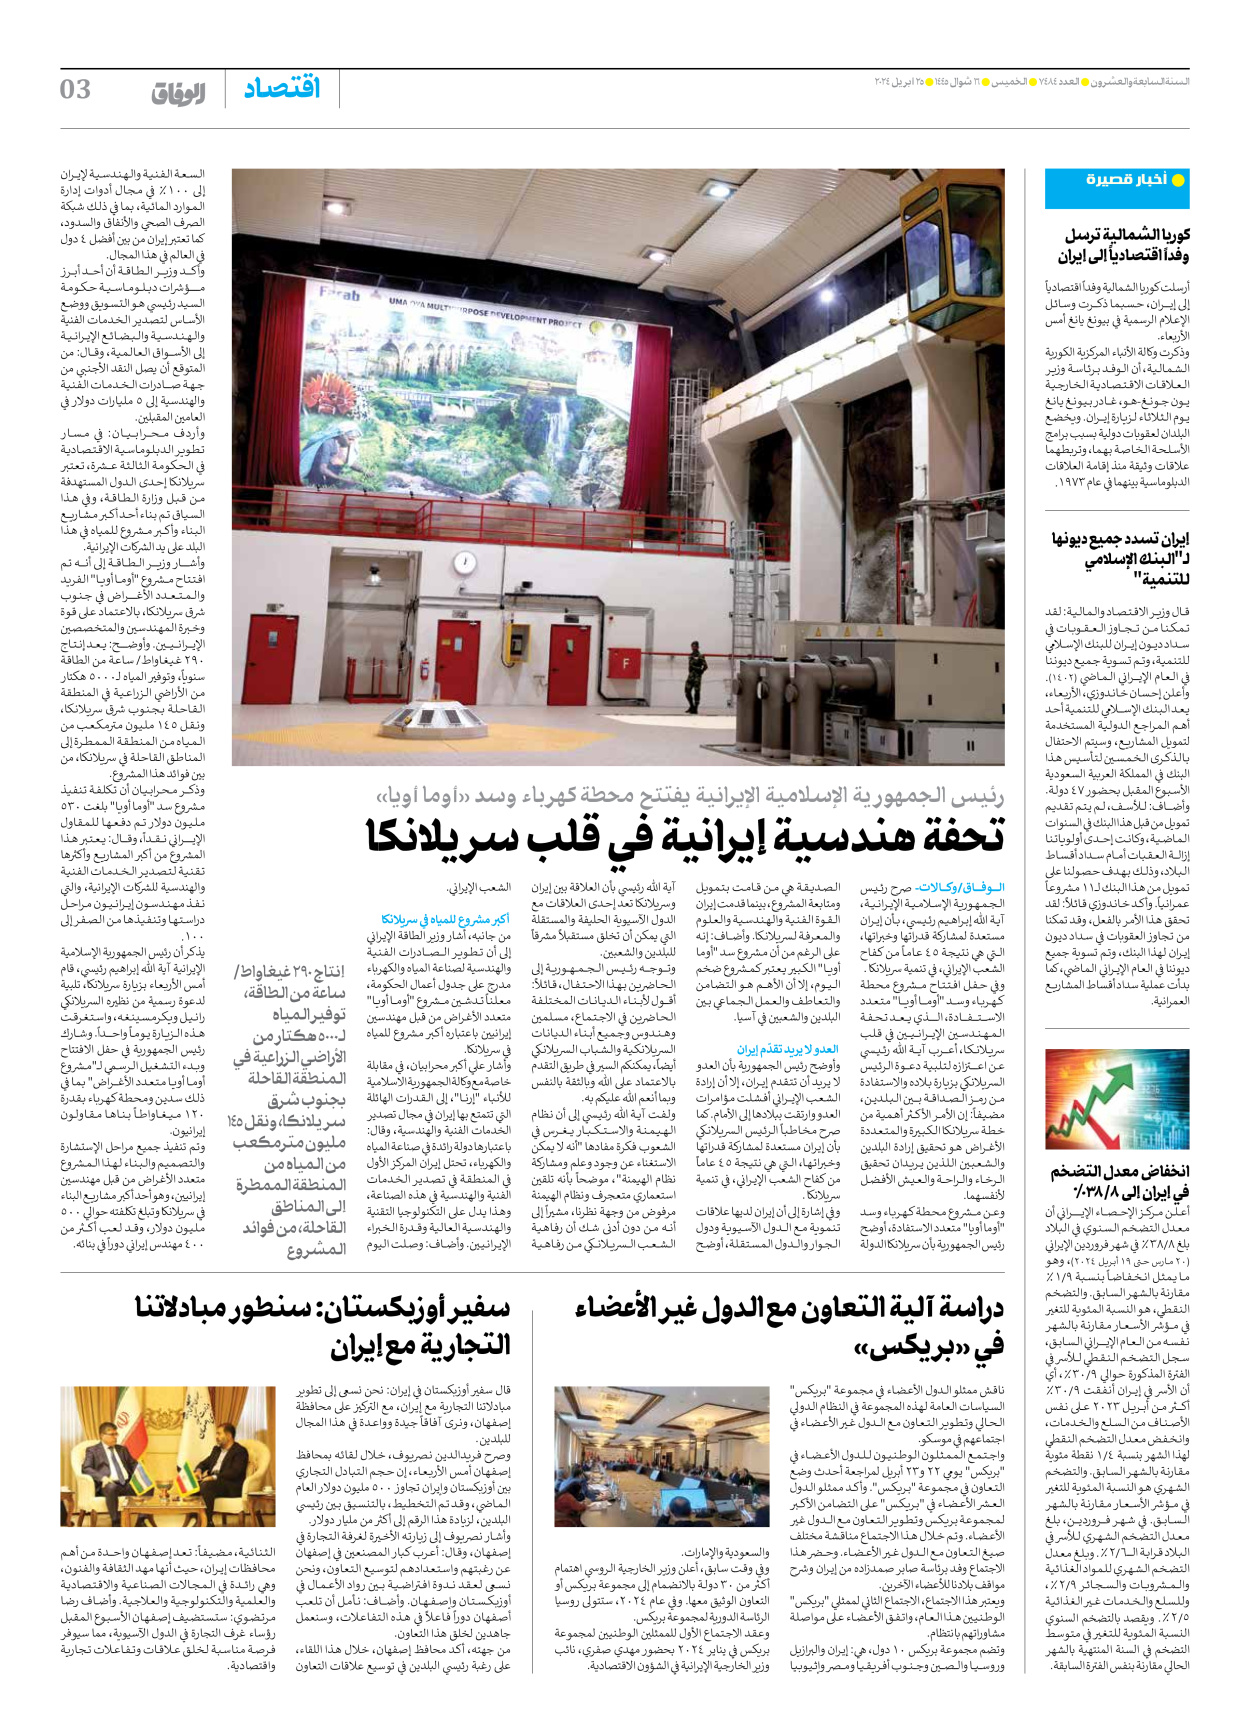 صحیفة ایران الدولیة الوفاق - العدد سبعة آلاف وأربعمائة وأربعة وثمانون - ٢٥ أبريل ٢٠٢٤ - الصفحة ۳